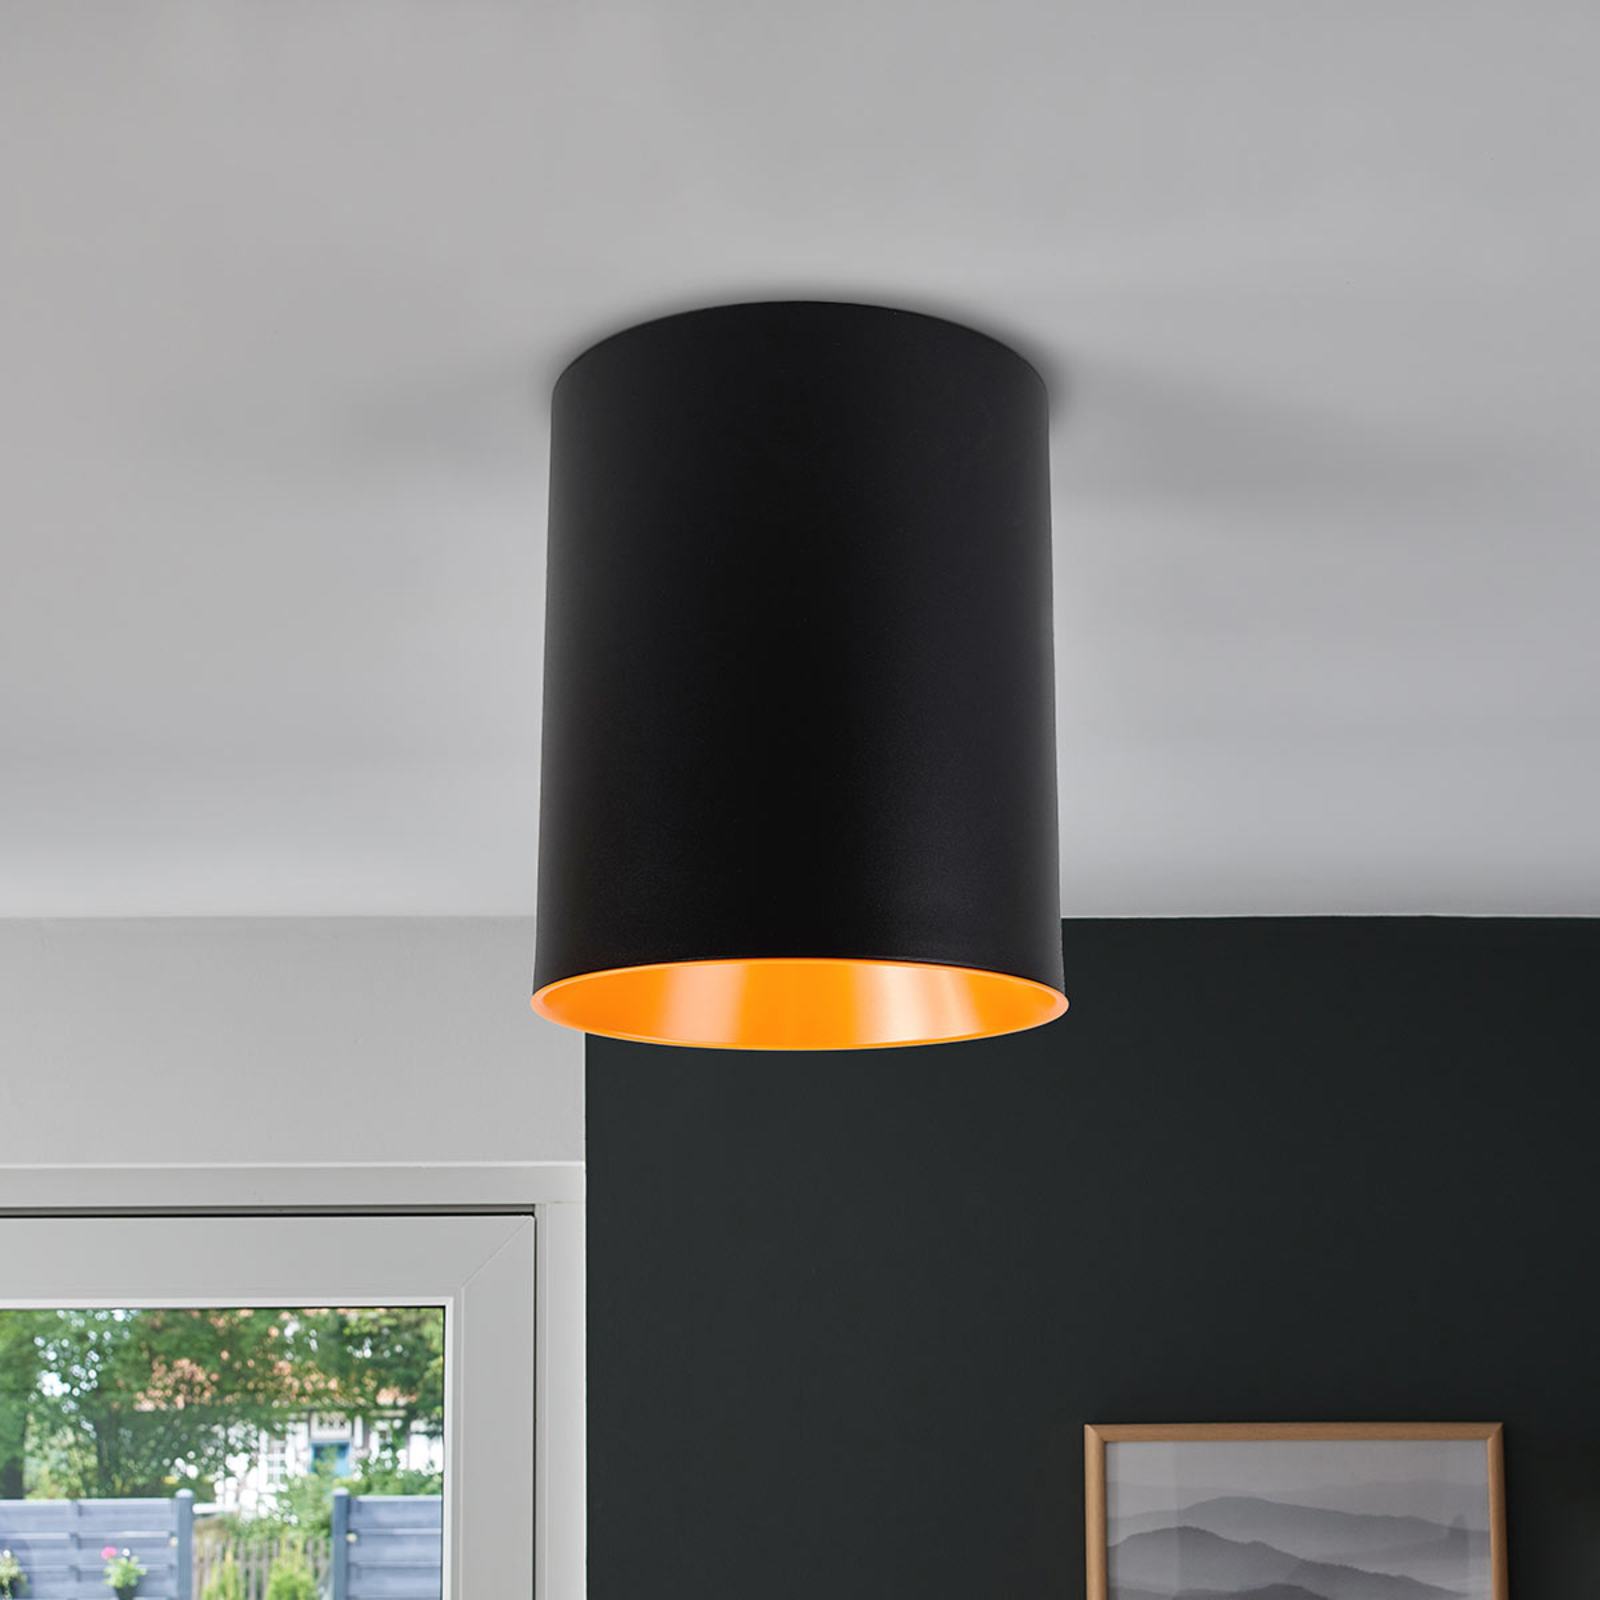 Lampa sufitowa LED Tagora w kształcie cylindra